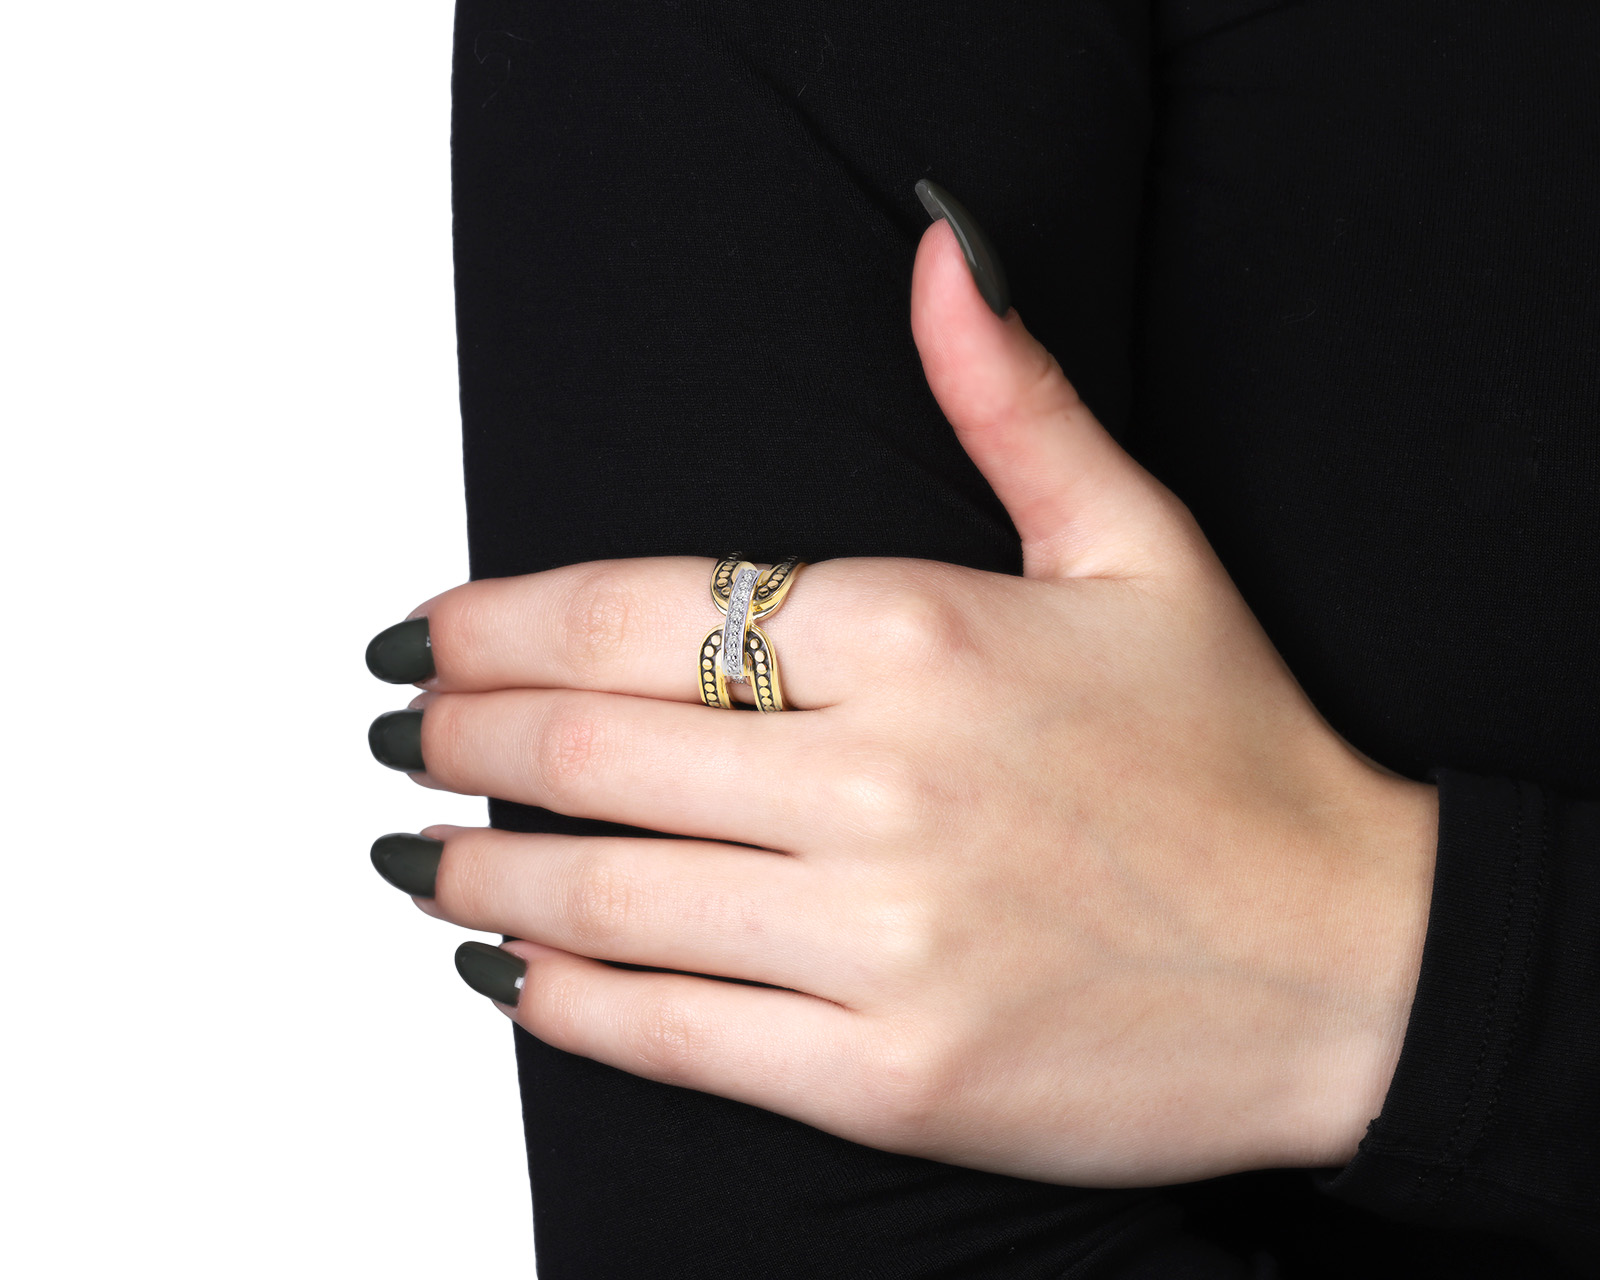 Оригинальное золотое кольцо с бриллиантами 0.10ct John Hardy